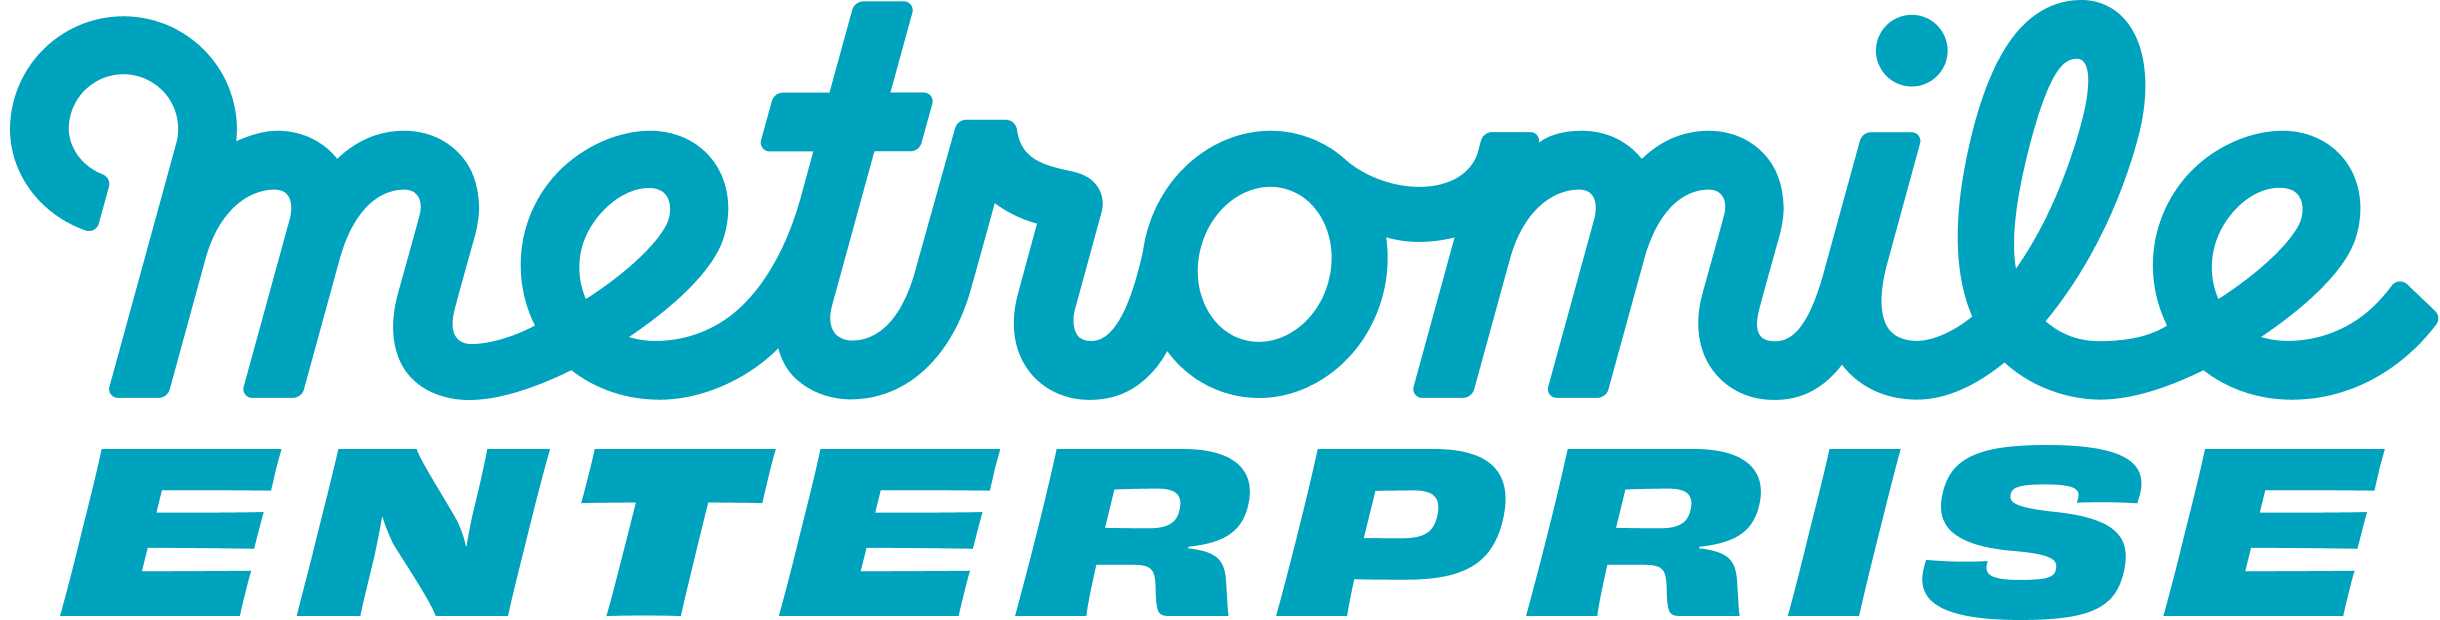 Metromile Logo